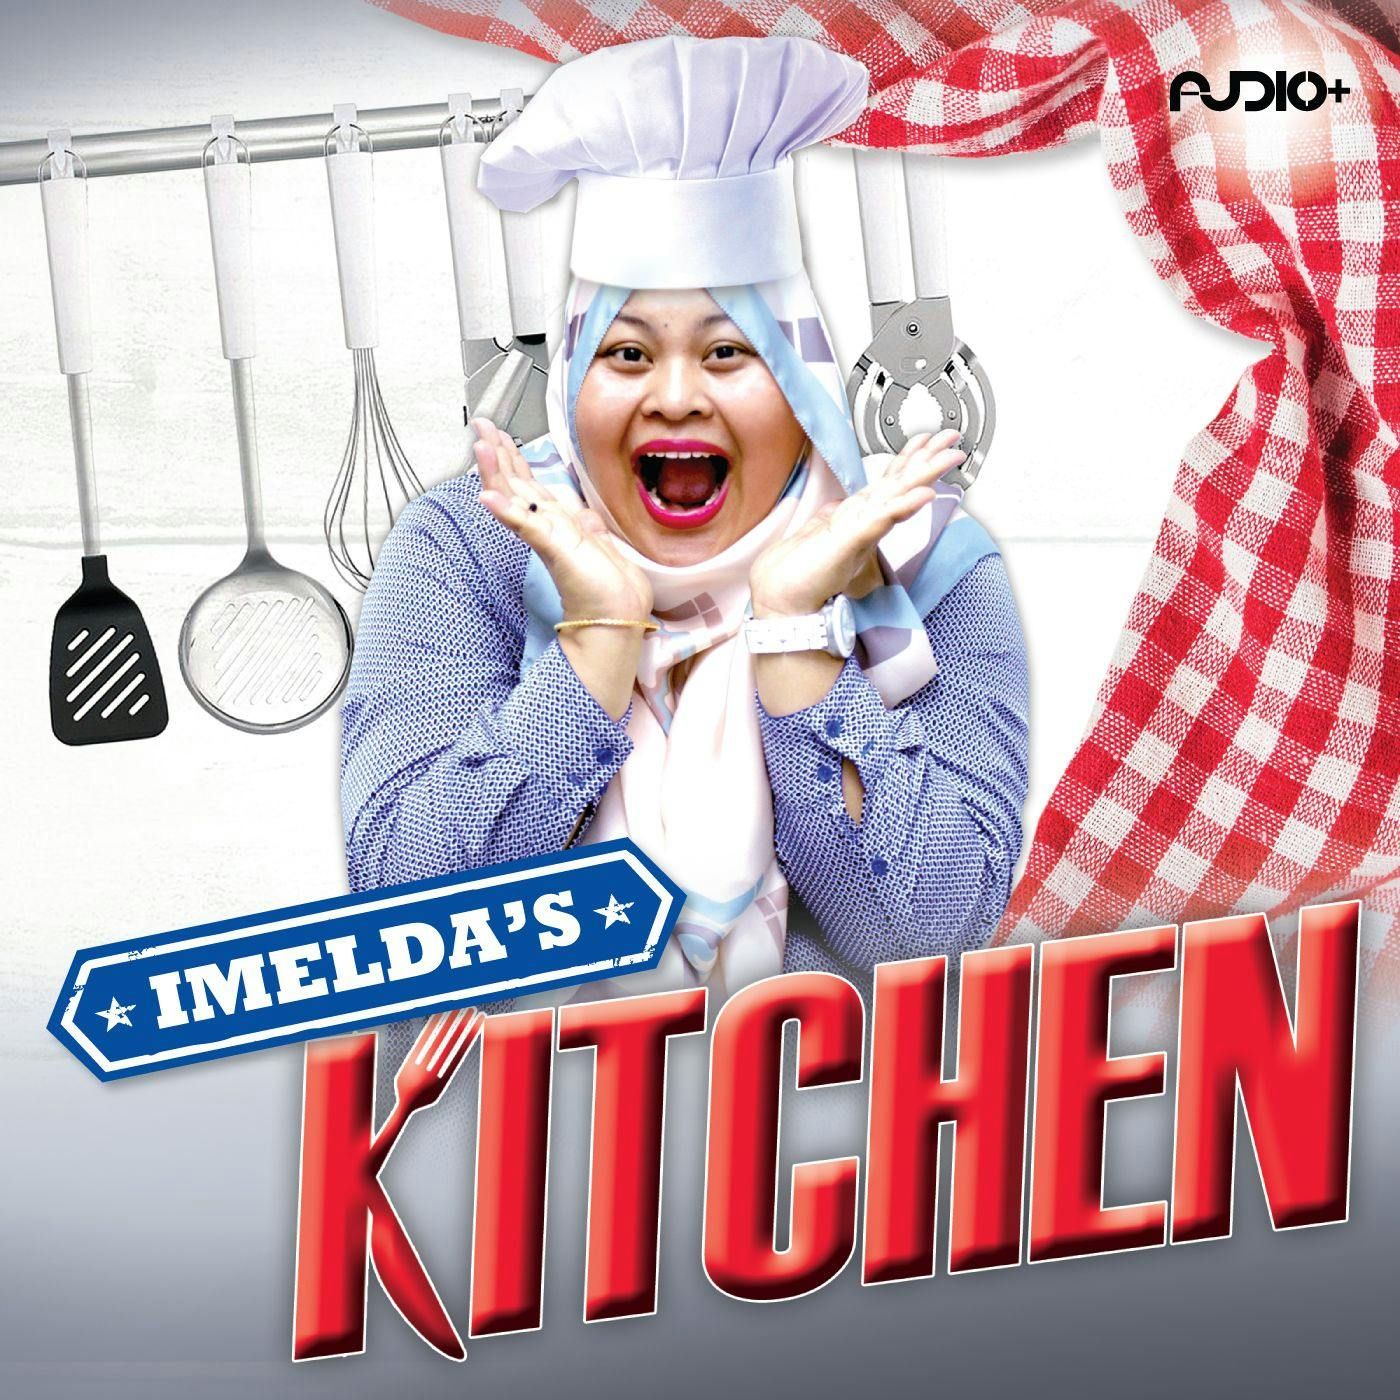 Episode 43 - Asam Pedas Salmon Head  : Imelda's Kitchen